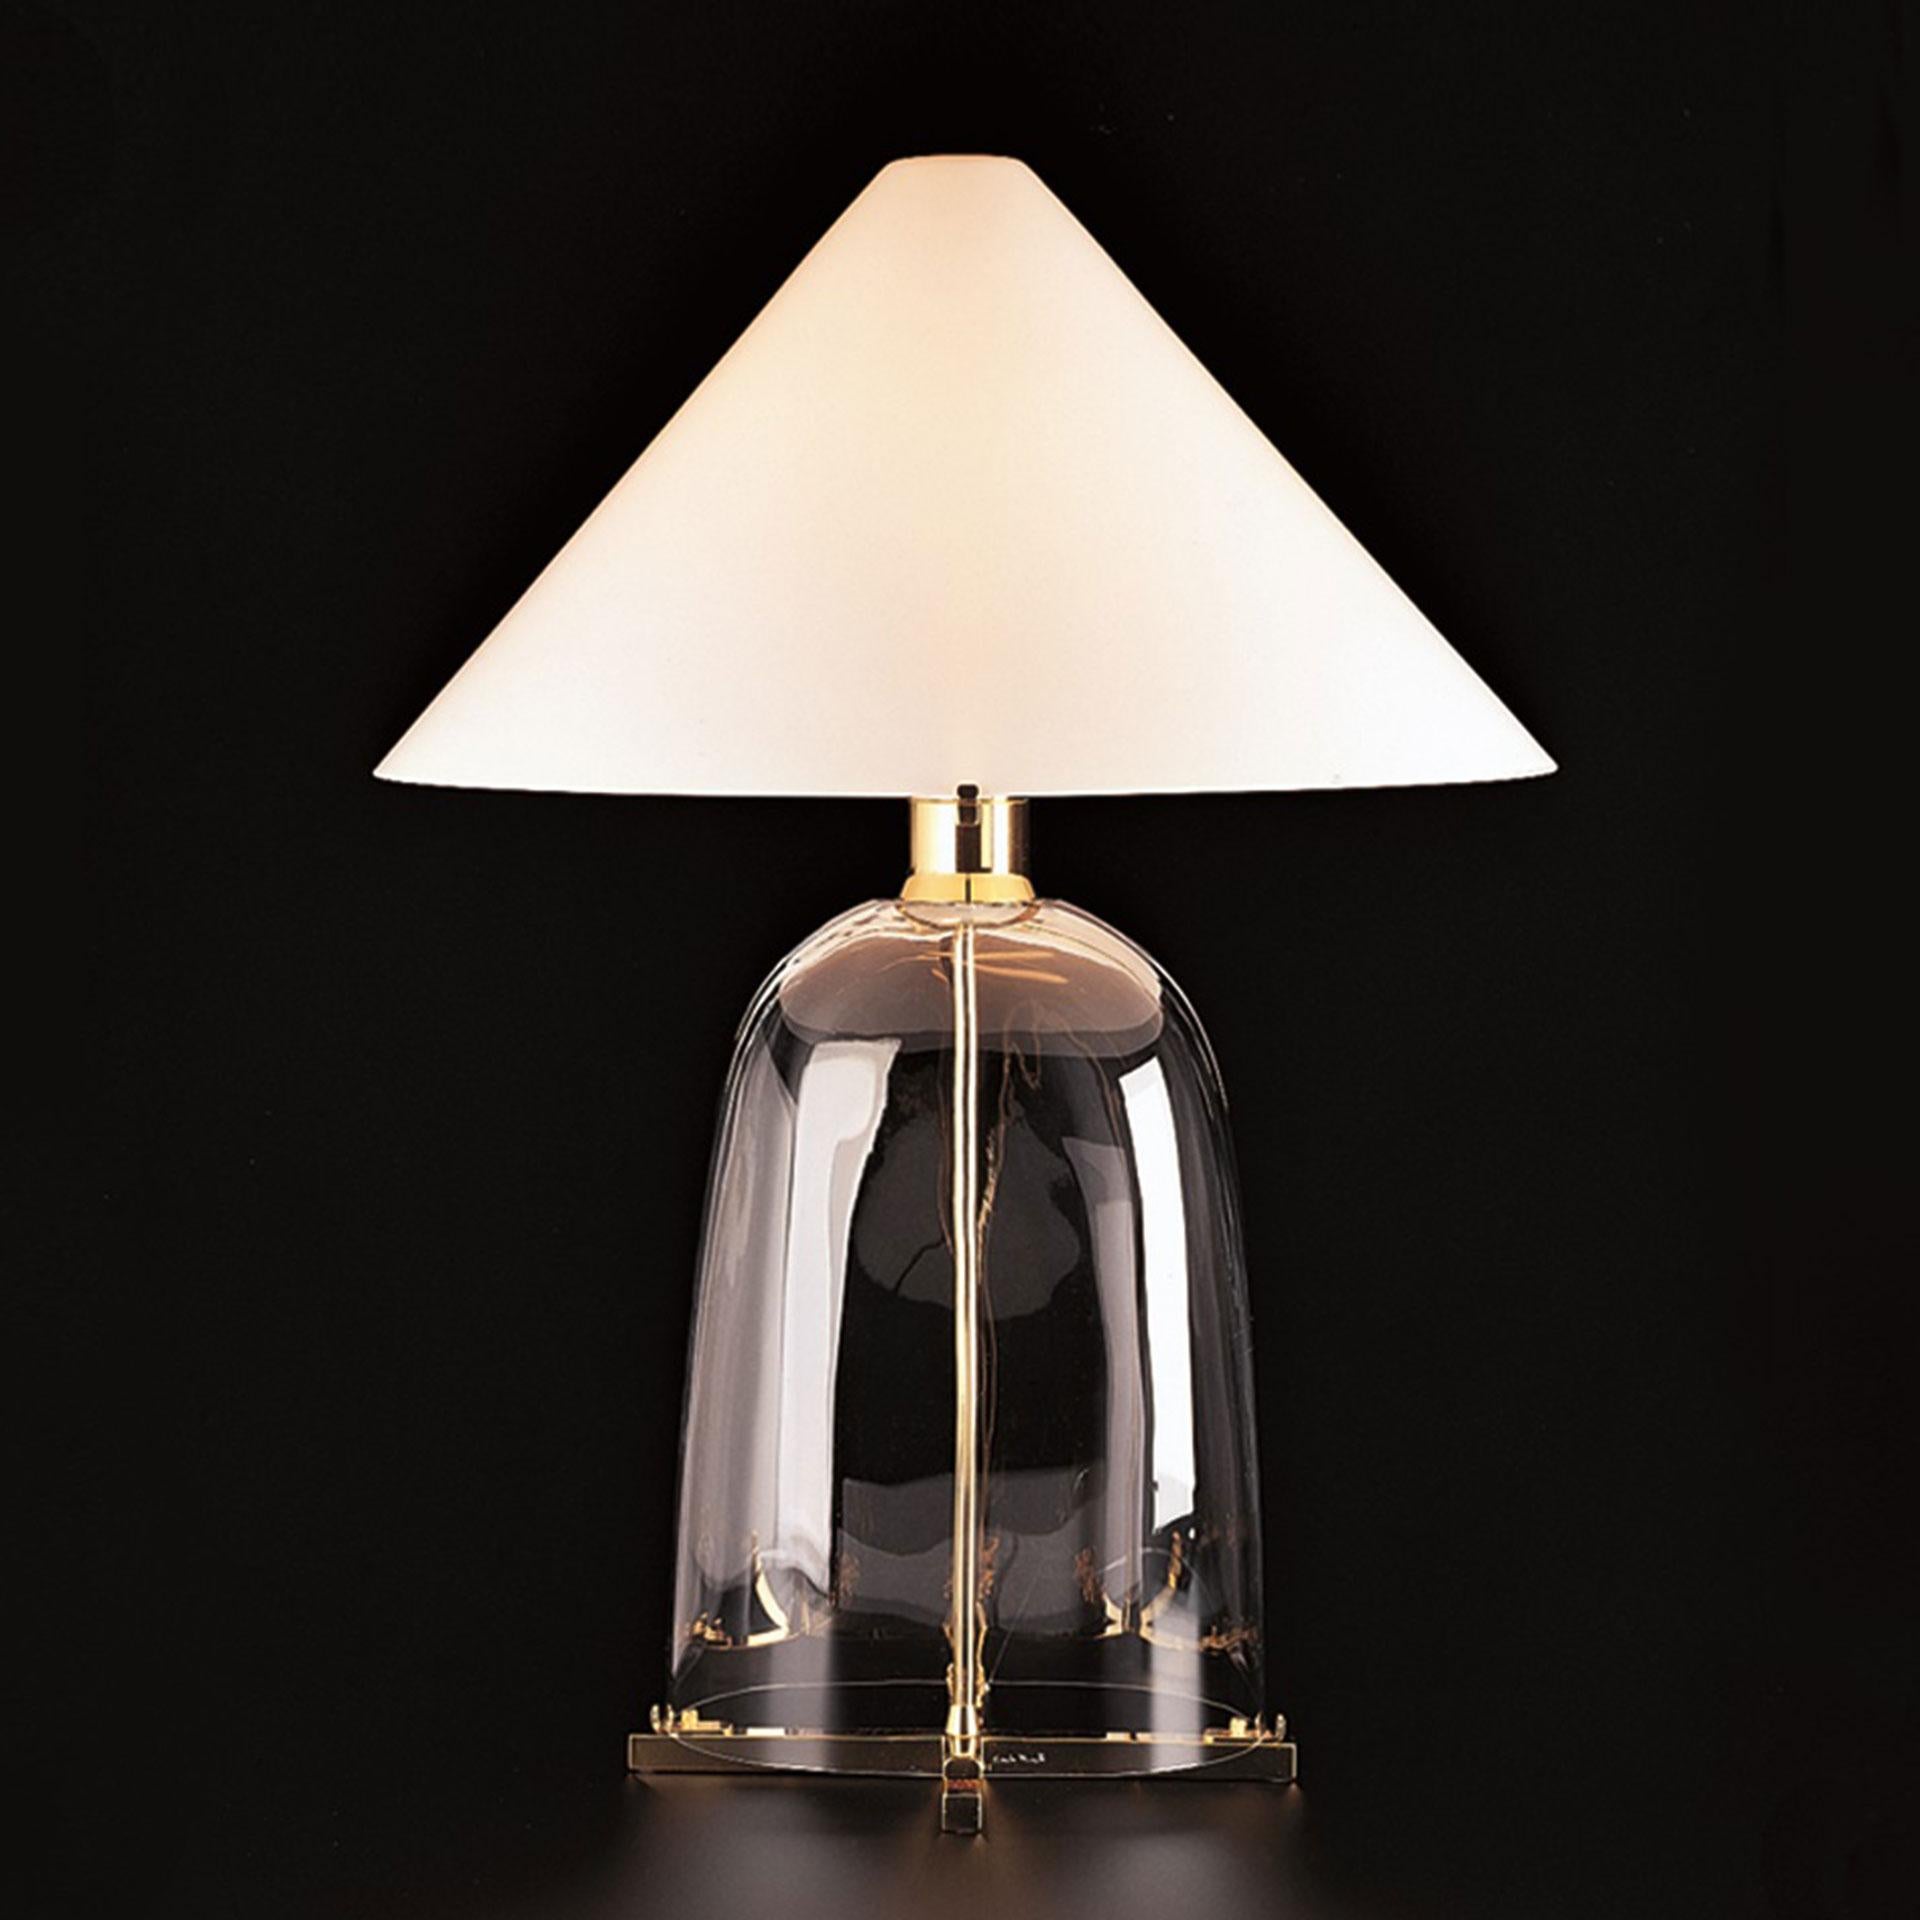 Ovale ist eine Tischleuchte aus mundgeblasenem Murano-Glas mit einem Schirm aus mundgeblasenem weißem Murano-Opalglas auf vergoldetem Metall, die als eine der 